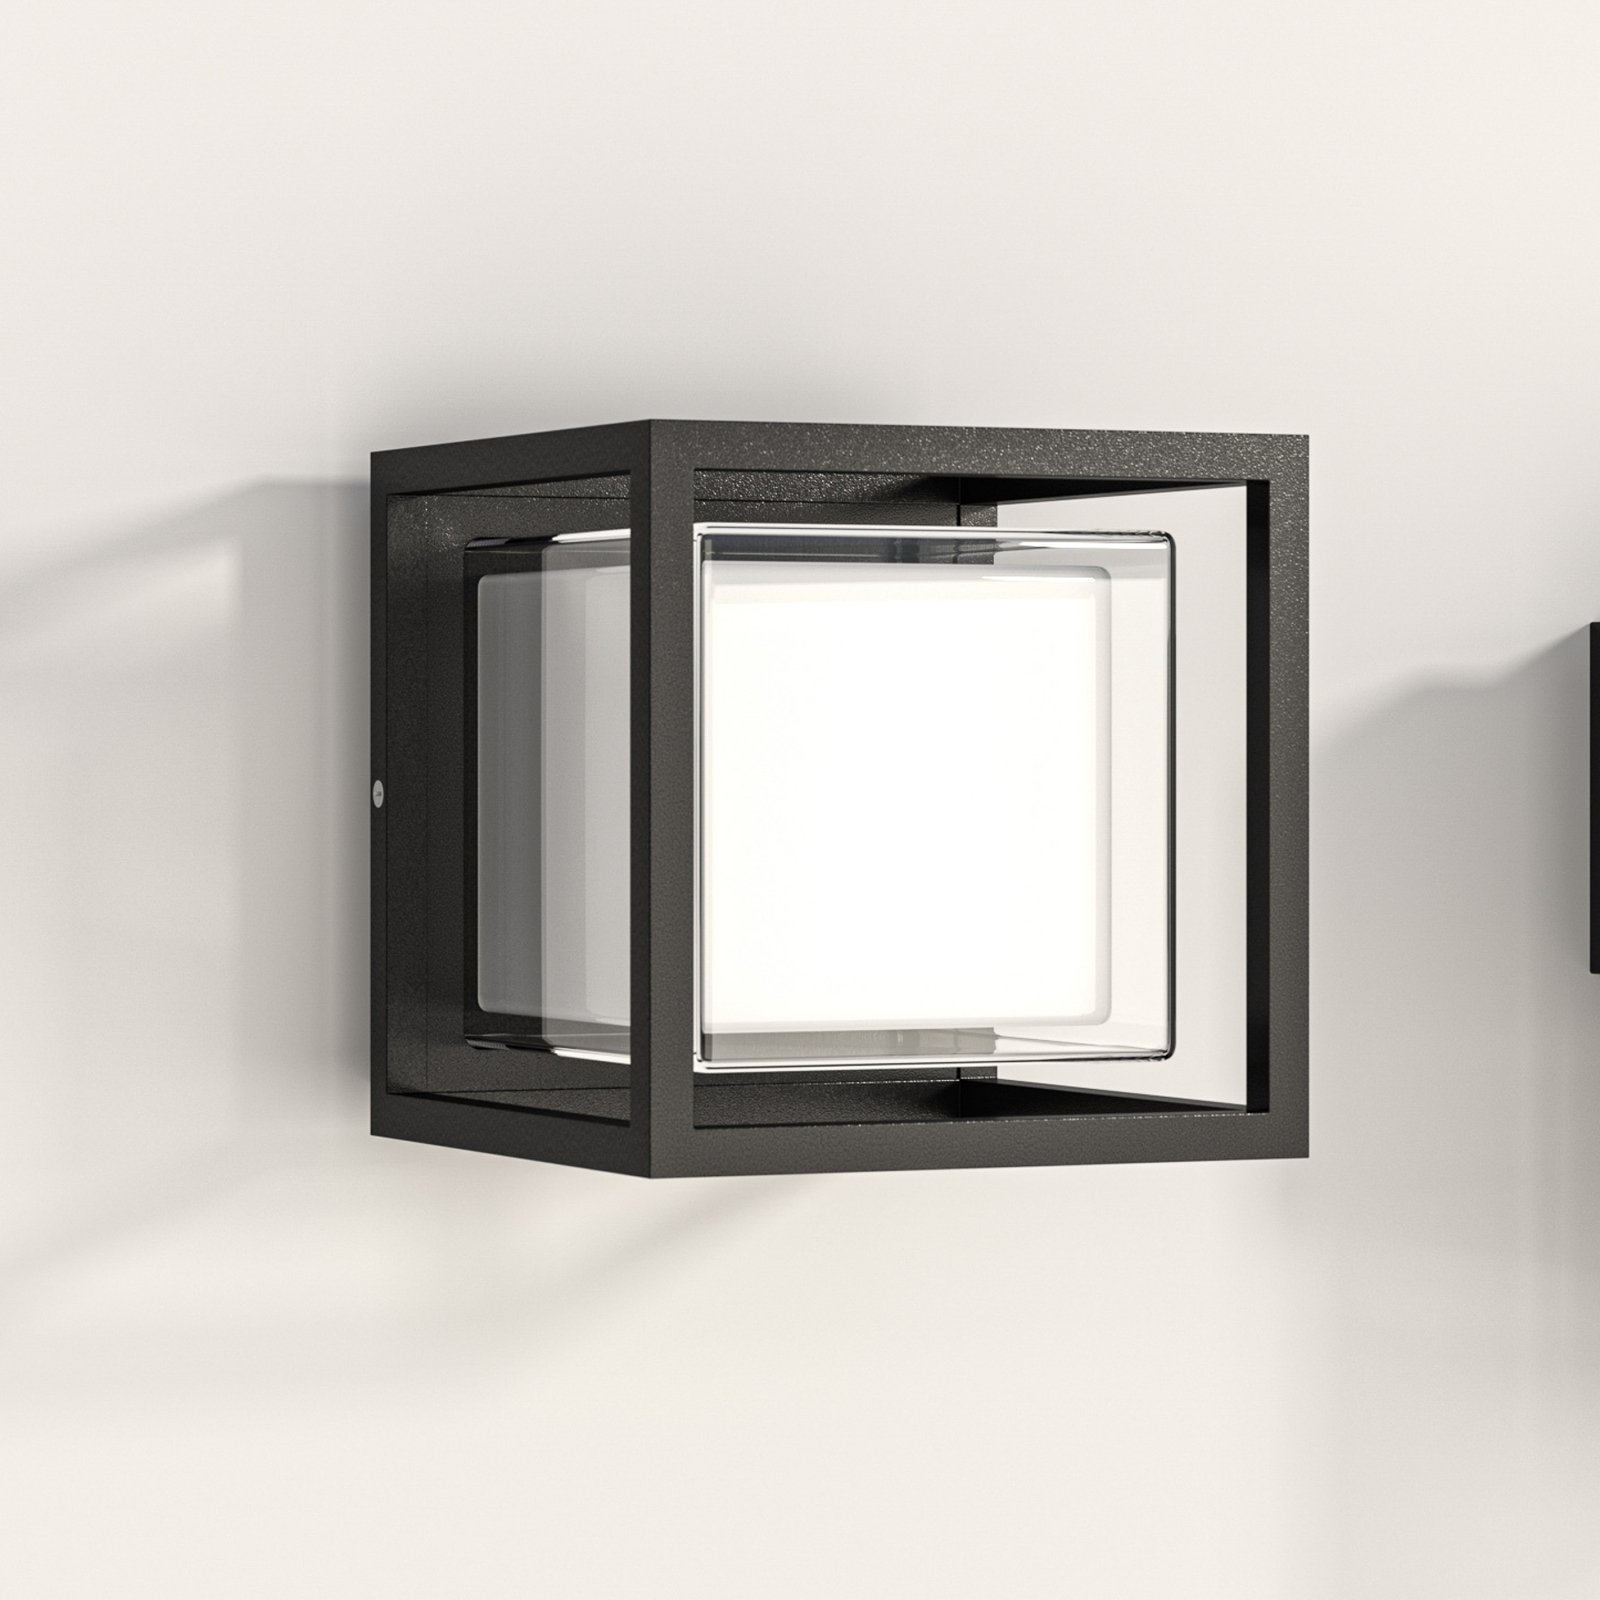 Kinkiet zewnętrzny LED Cubic, aluminium, kształt sześcianu